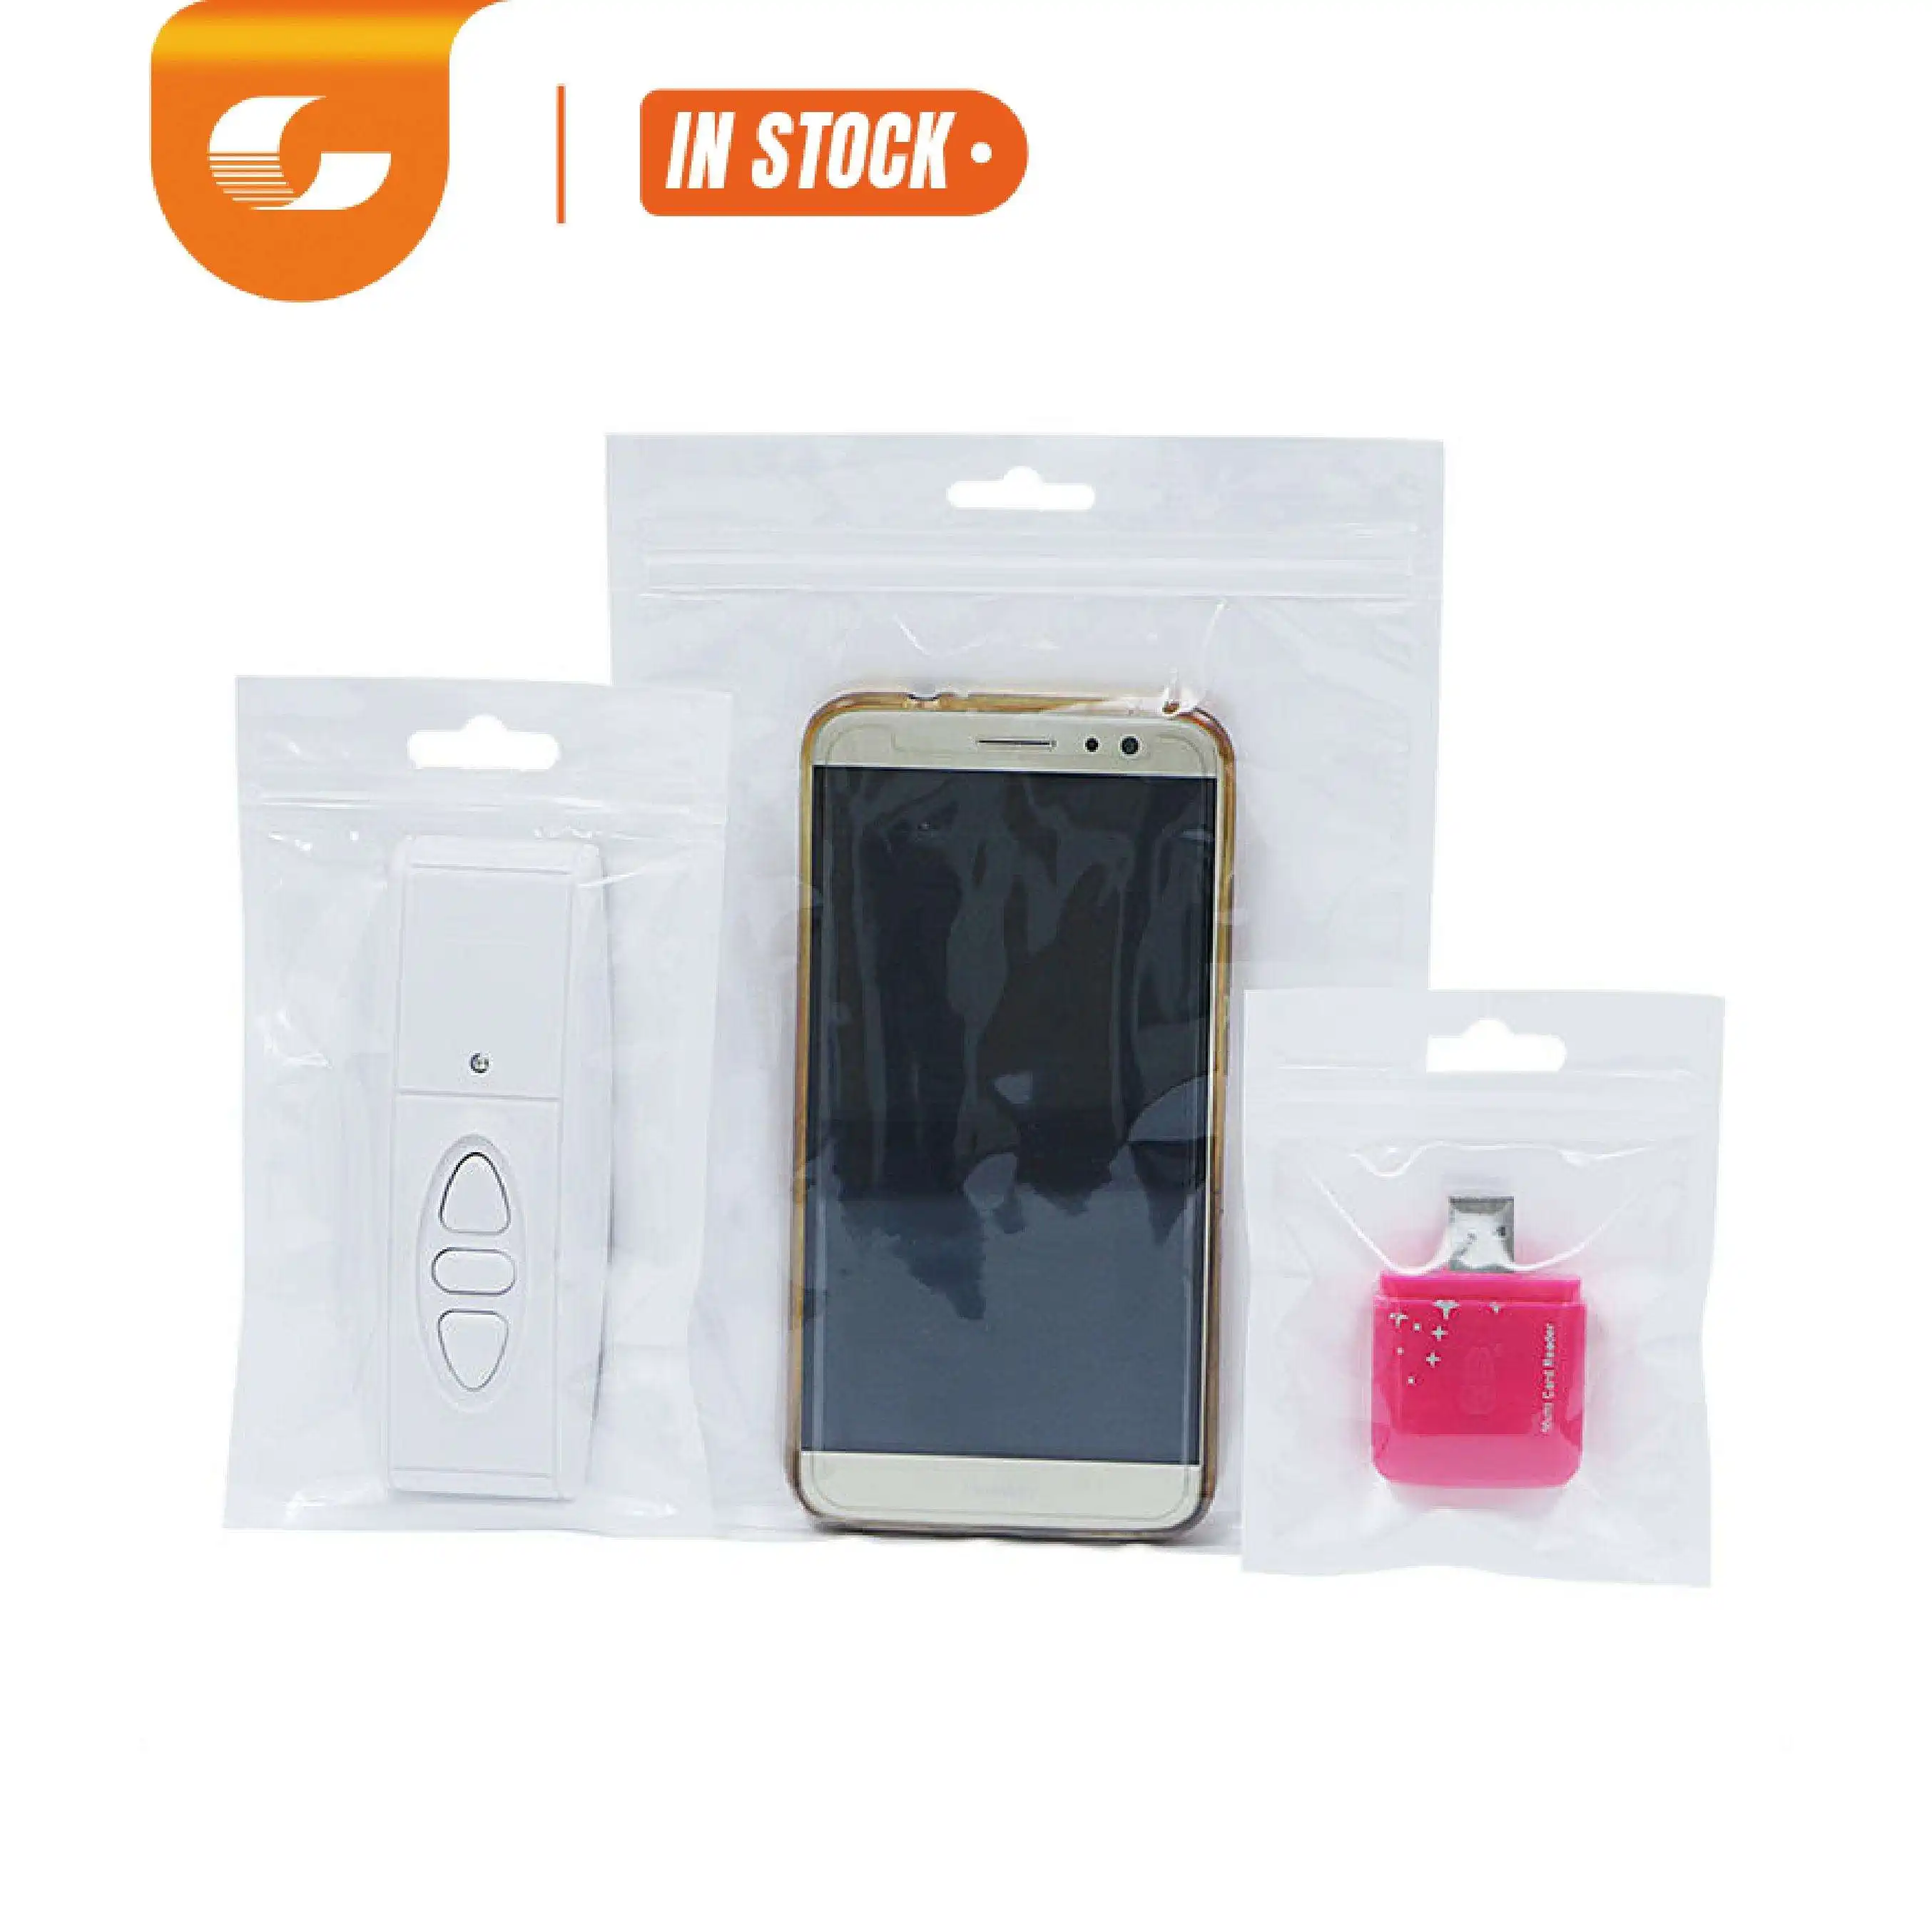 Fabriek Mode Hersluitbare Aangepaste Celgrootte Kleur Zip Lock Telefoonhoes Verpakking Tassen Voor Kleine Bedrijven